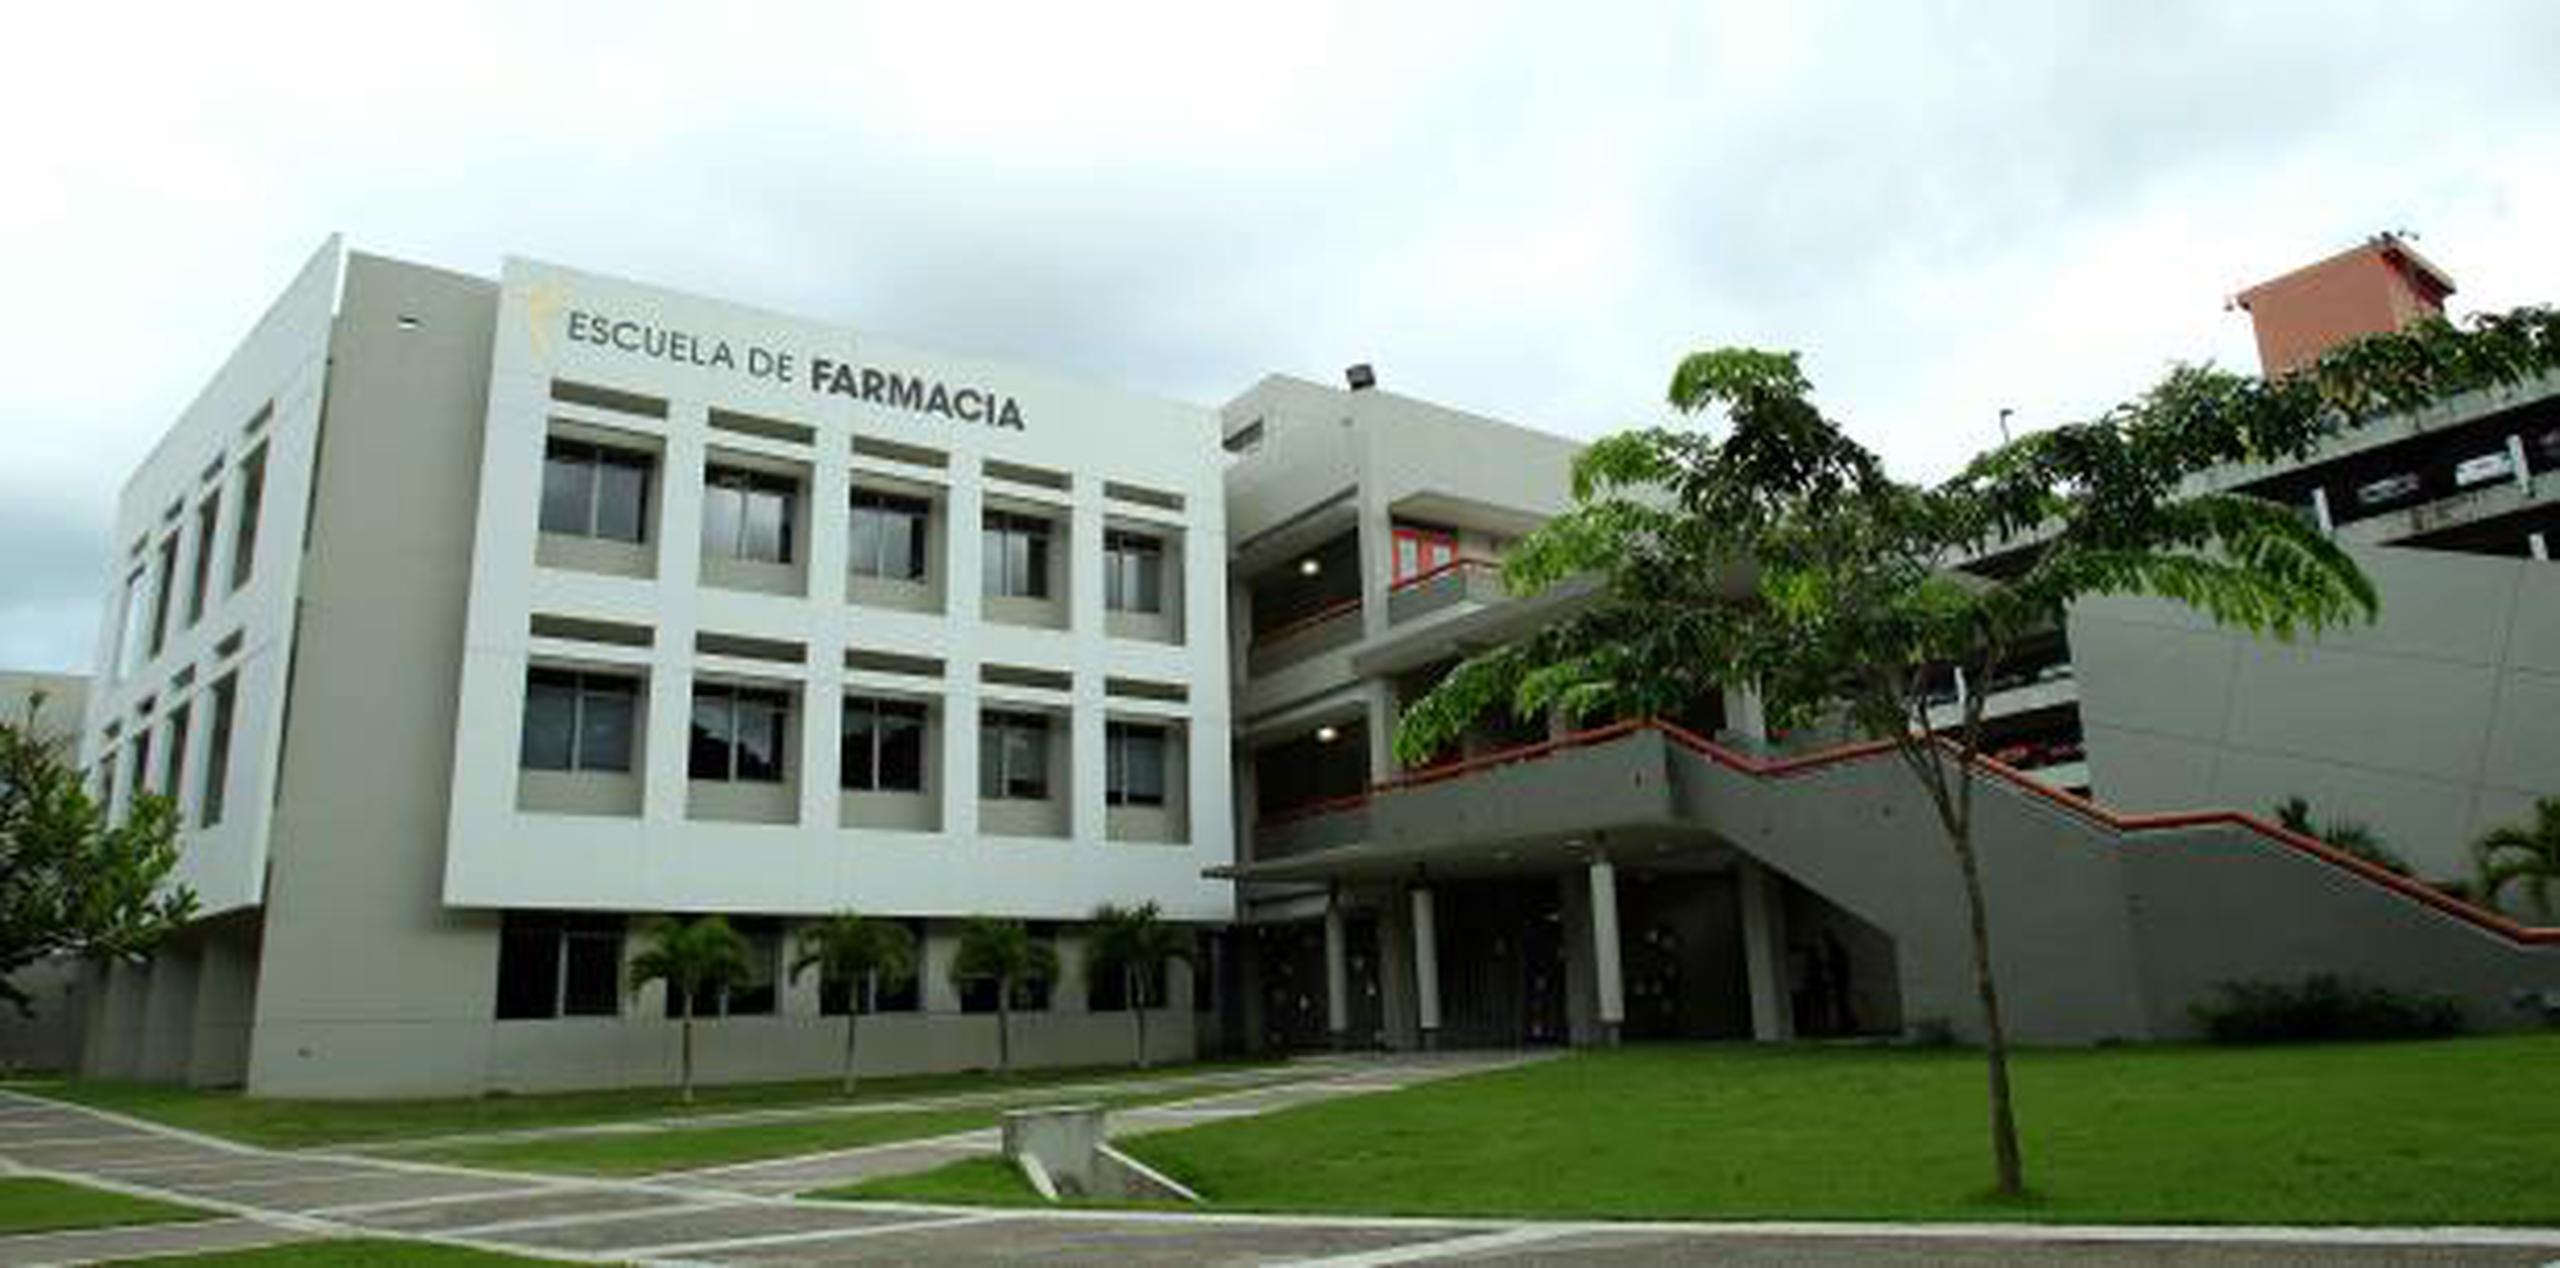 Escuela de farmacia del recinto de Ciencias Médicas de la Universidad de Puerto Rico. (Archivo)